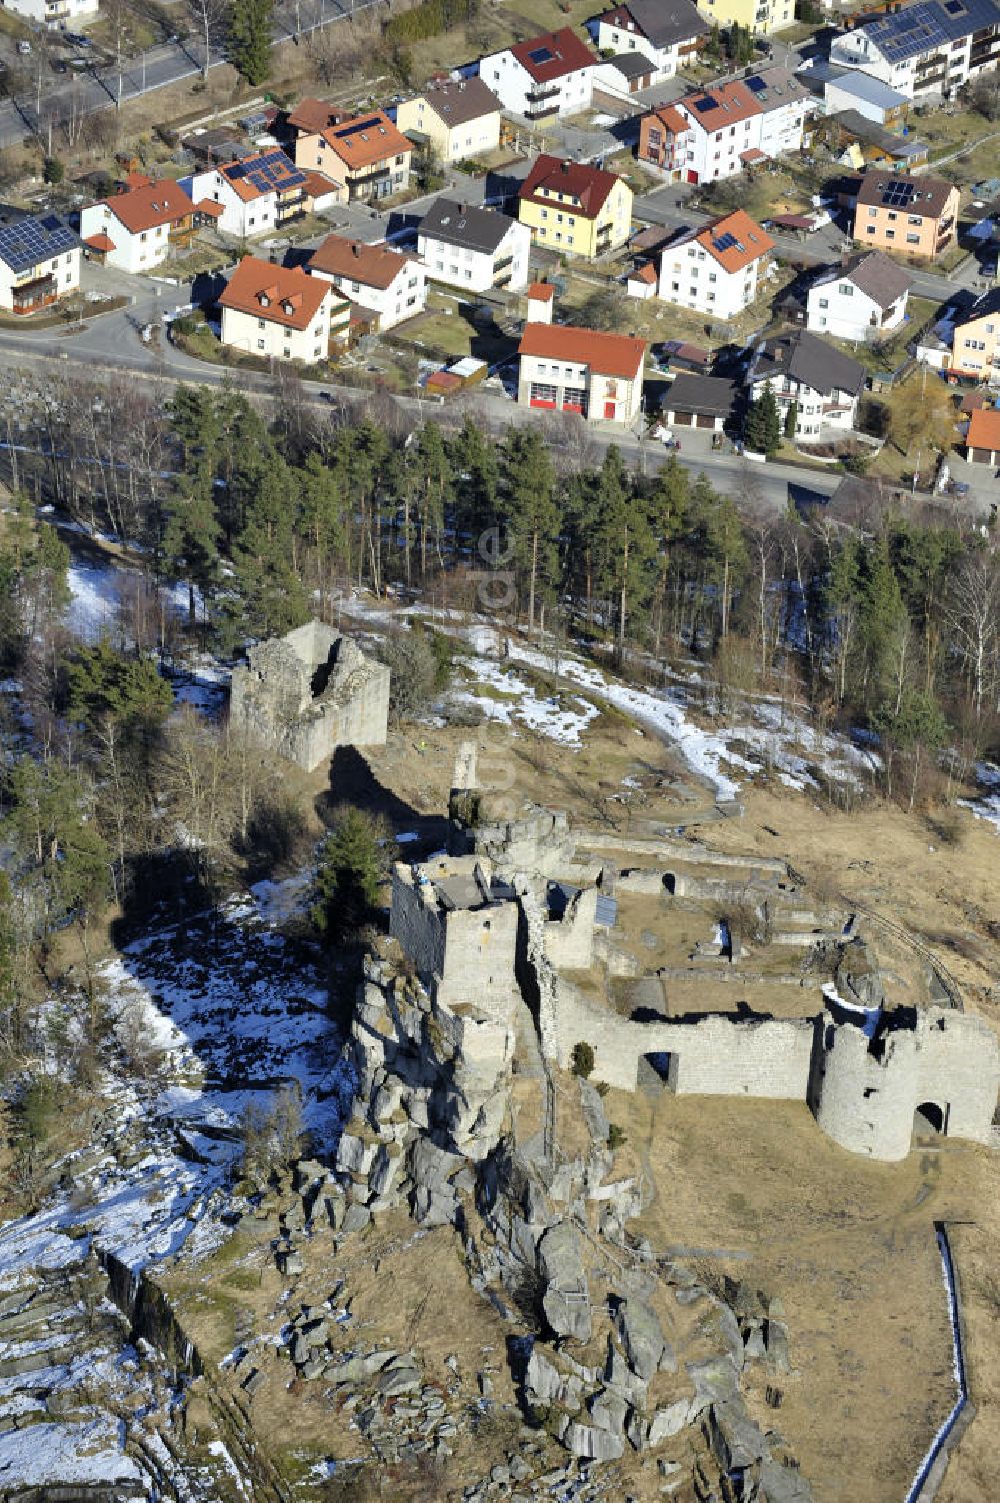 Luftbild Flossenbürg - Burg Flossenbürg in Bayern